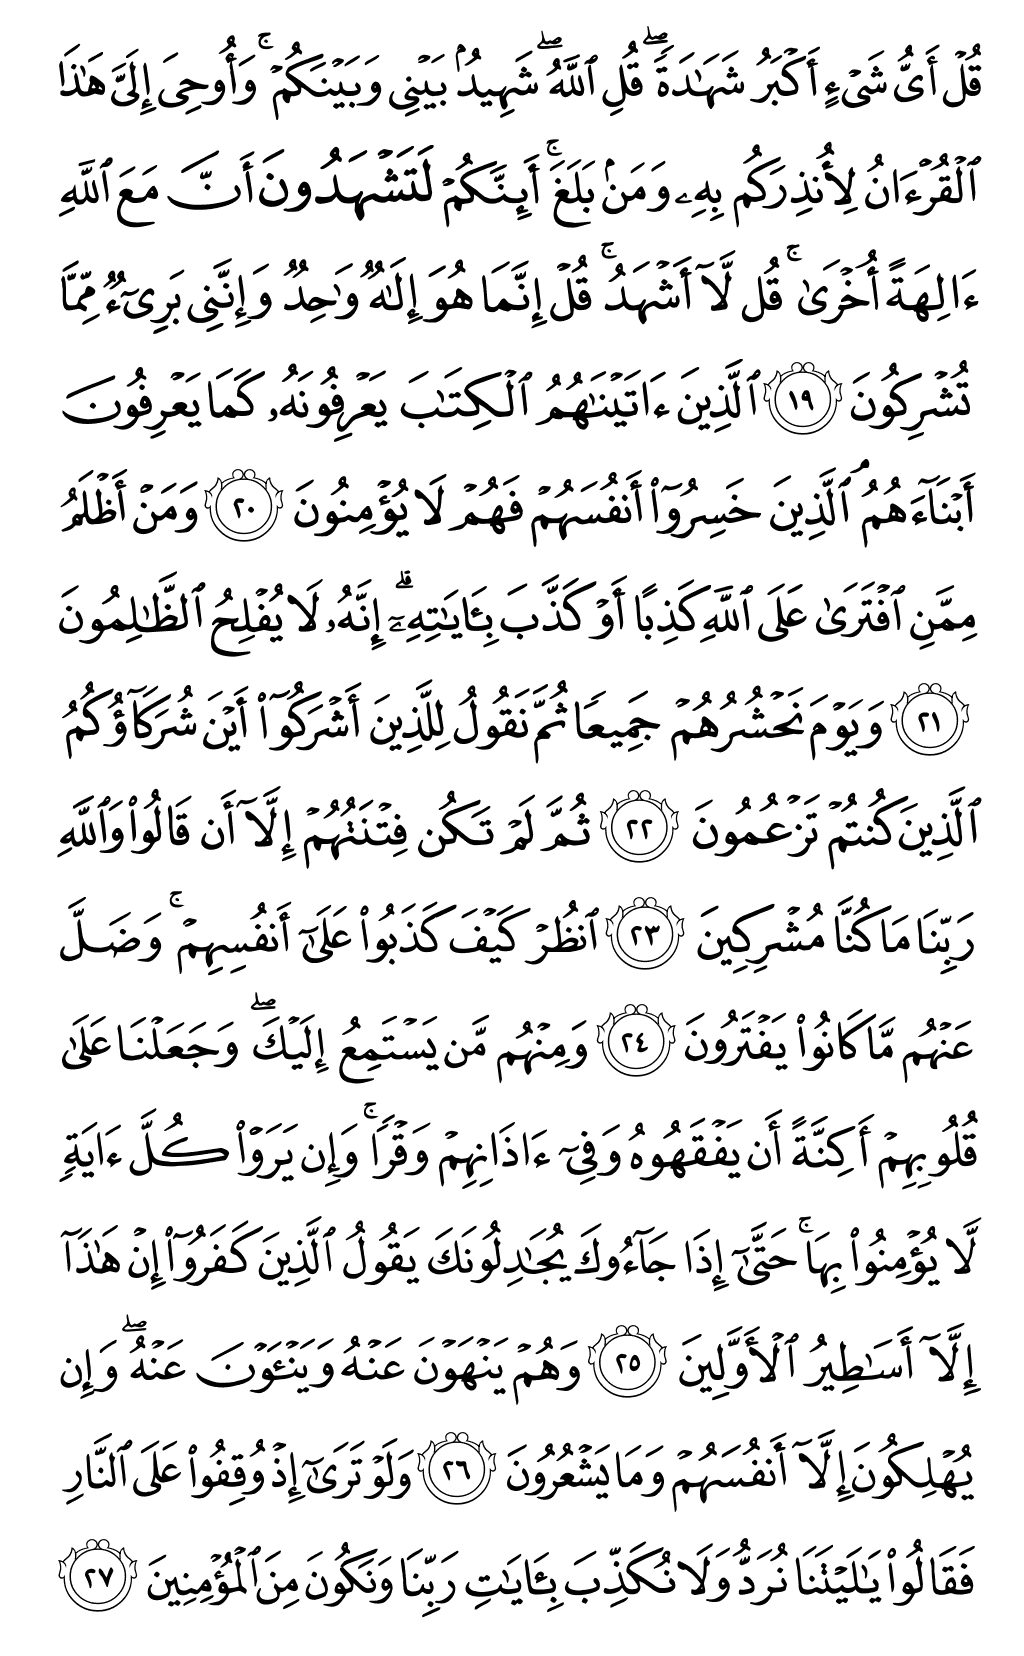 الصفحة رقم 130 من القرآن الكريم